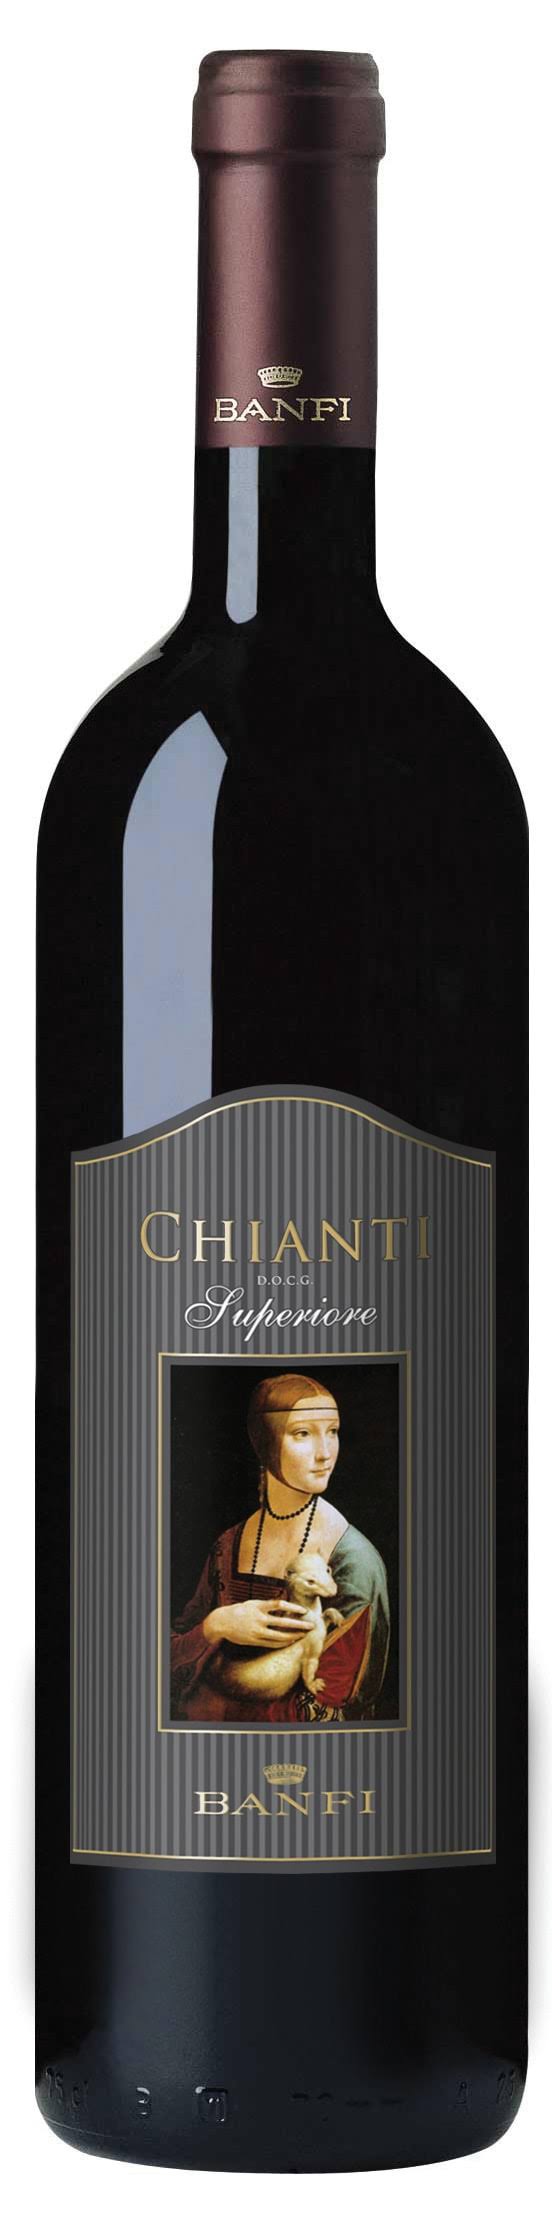 Banfi Chianti, Superiore, 2008 - 750 ml